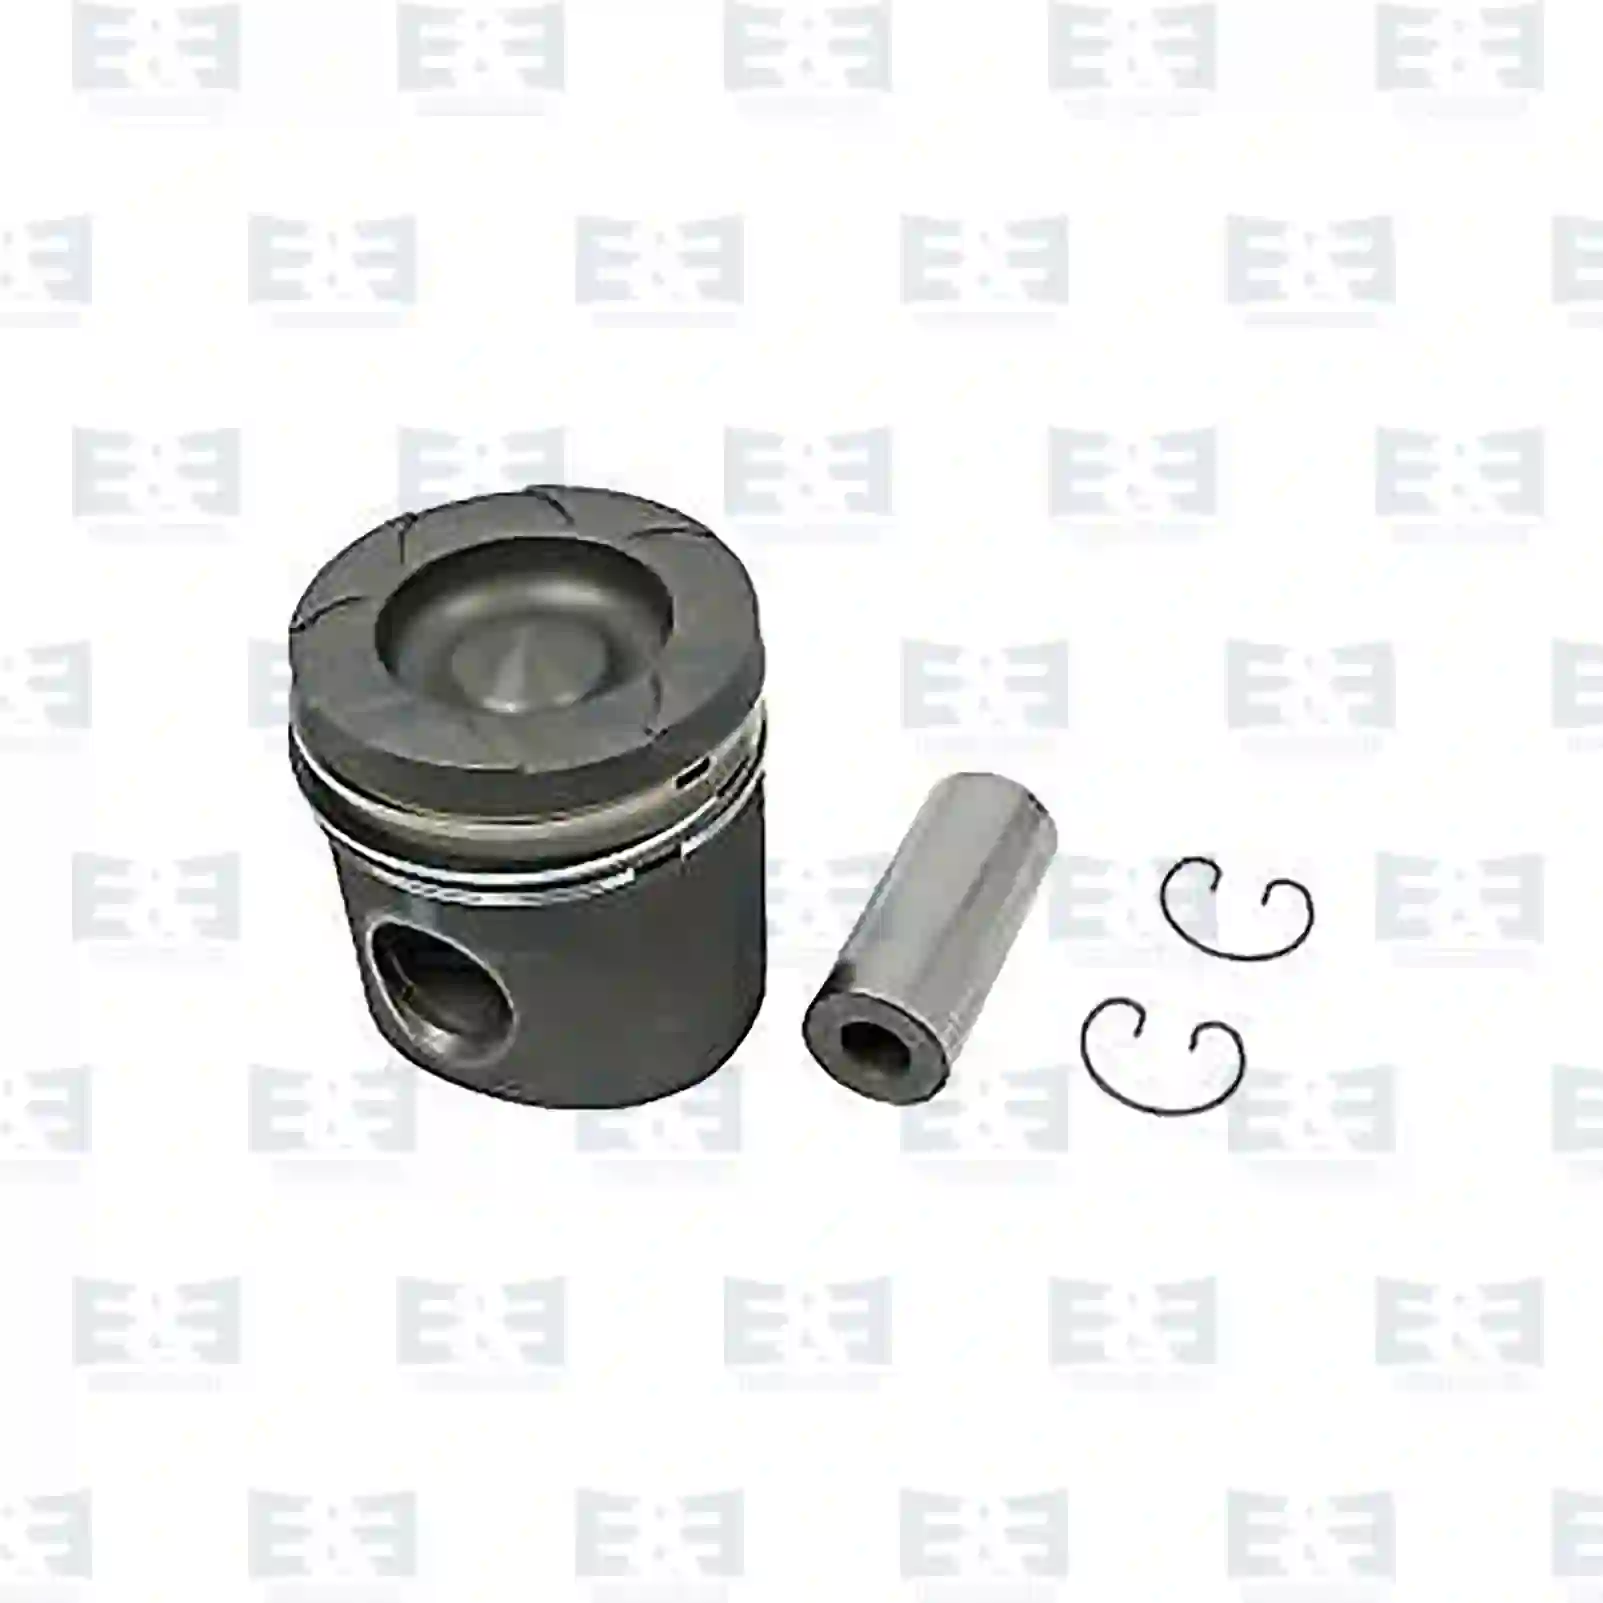  Piston, complete with rings || E&E Truck Spare Parts | Truck Spare Parts, Auotomotive Spare Parts